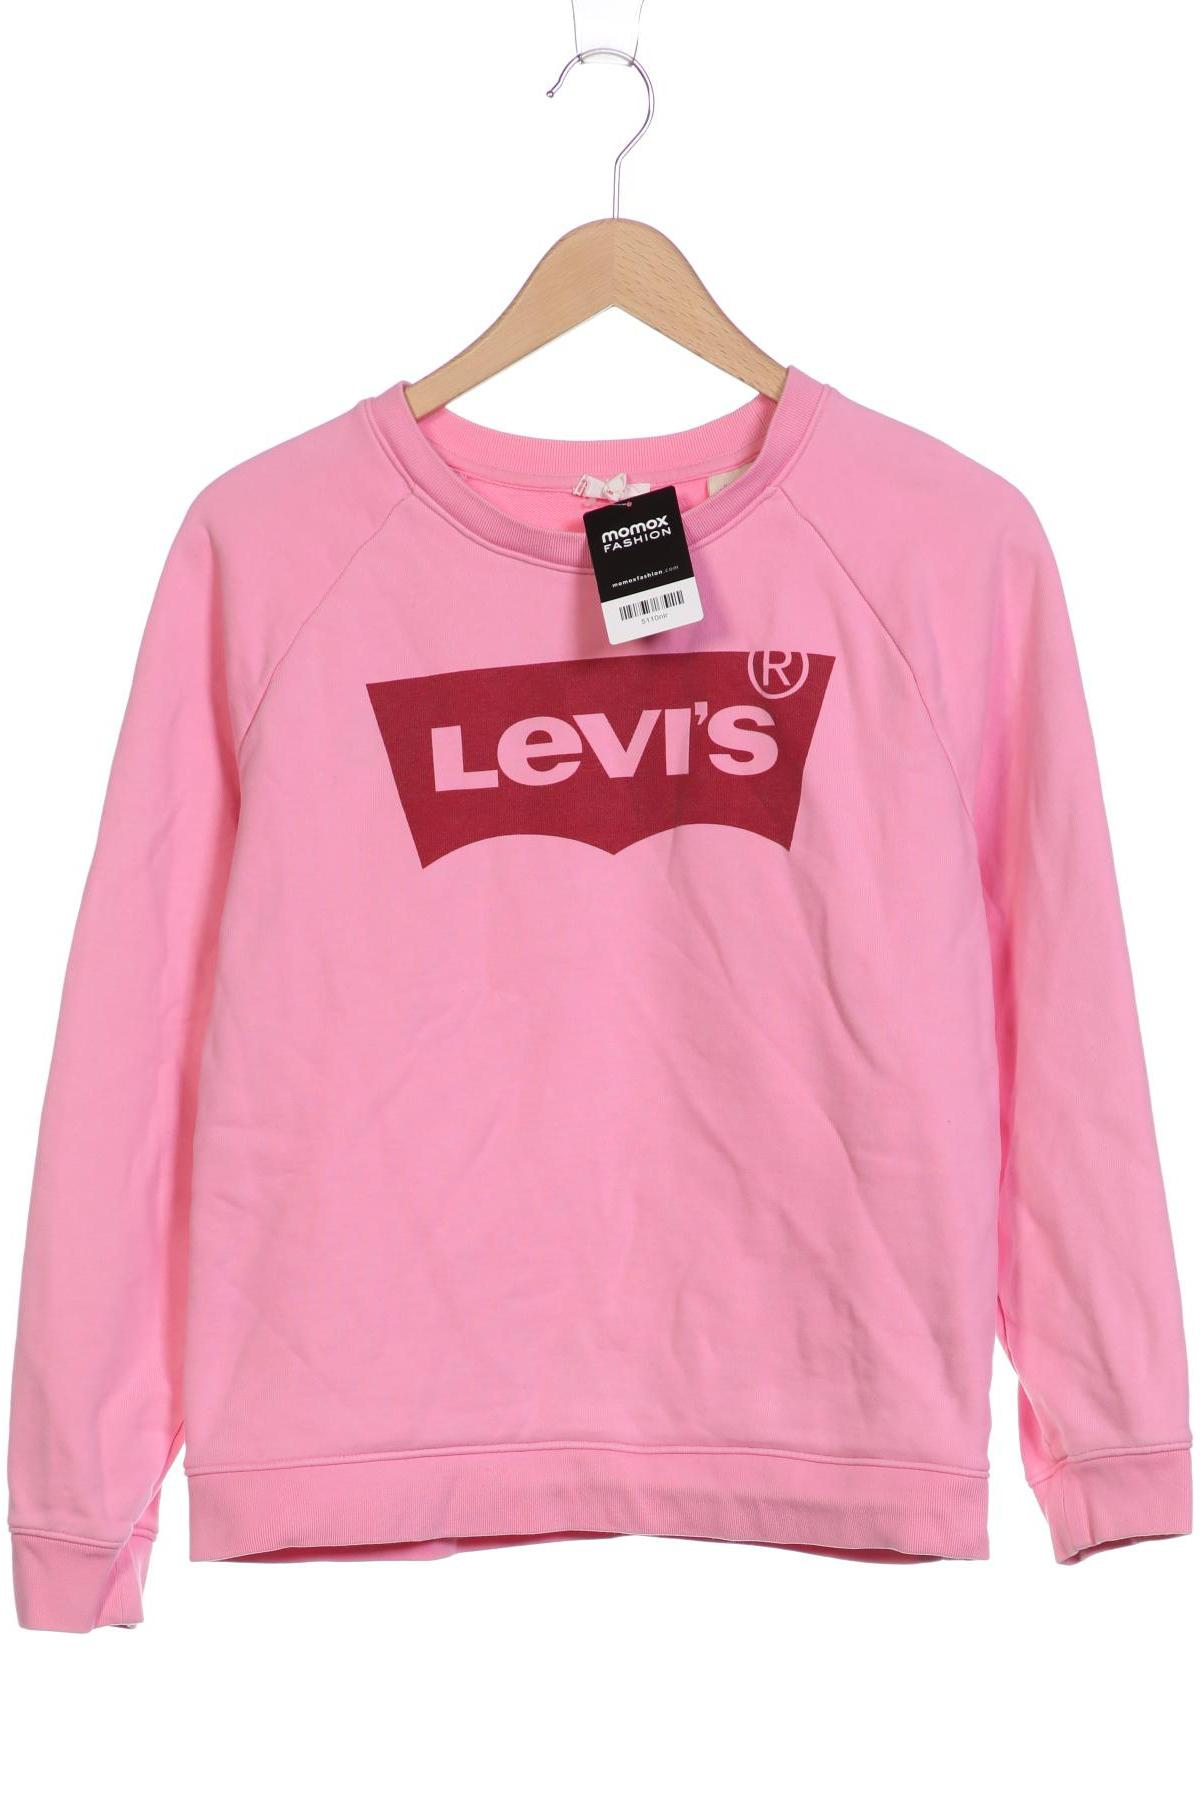 Levis Damen Sweatshirt, pink von Levis